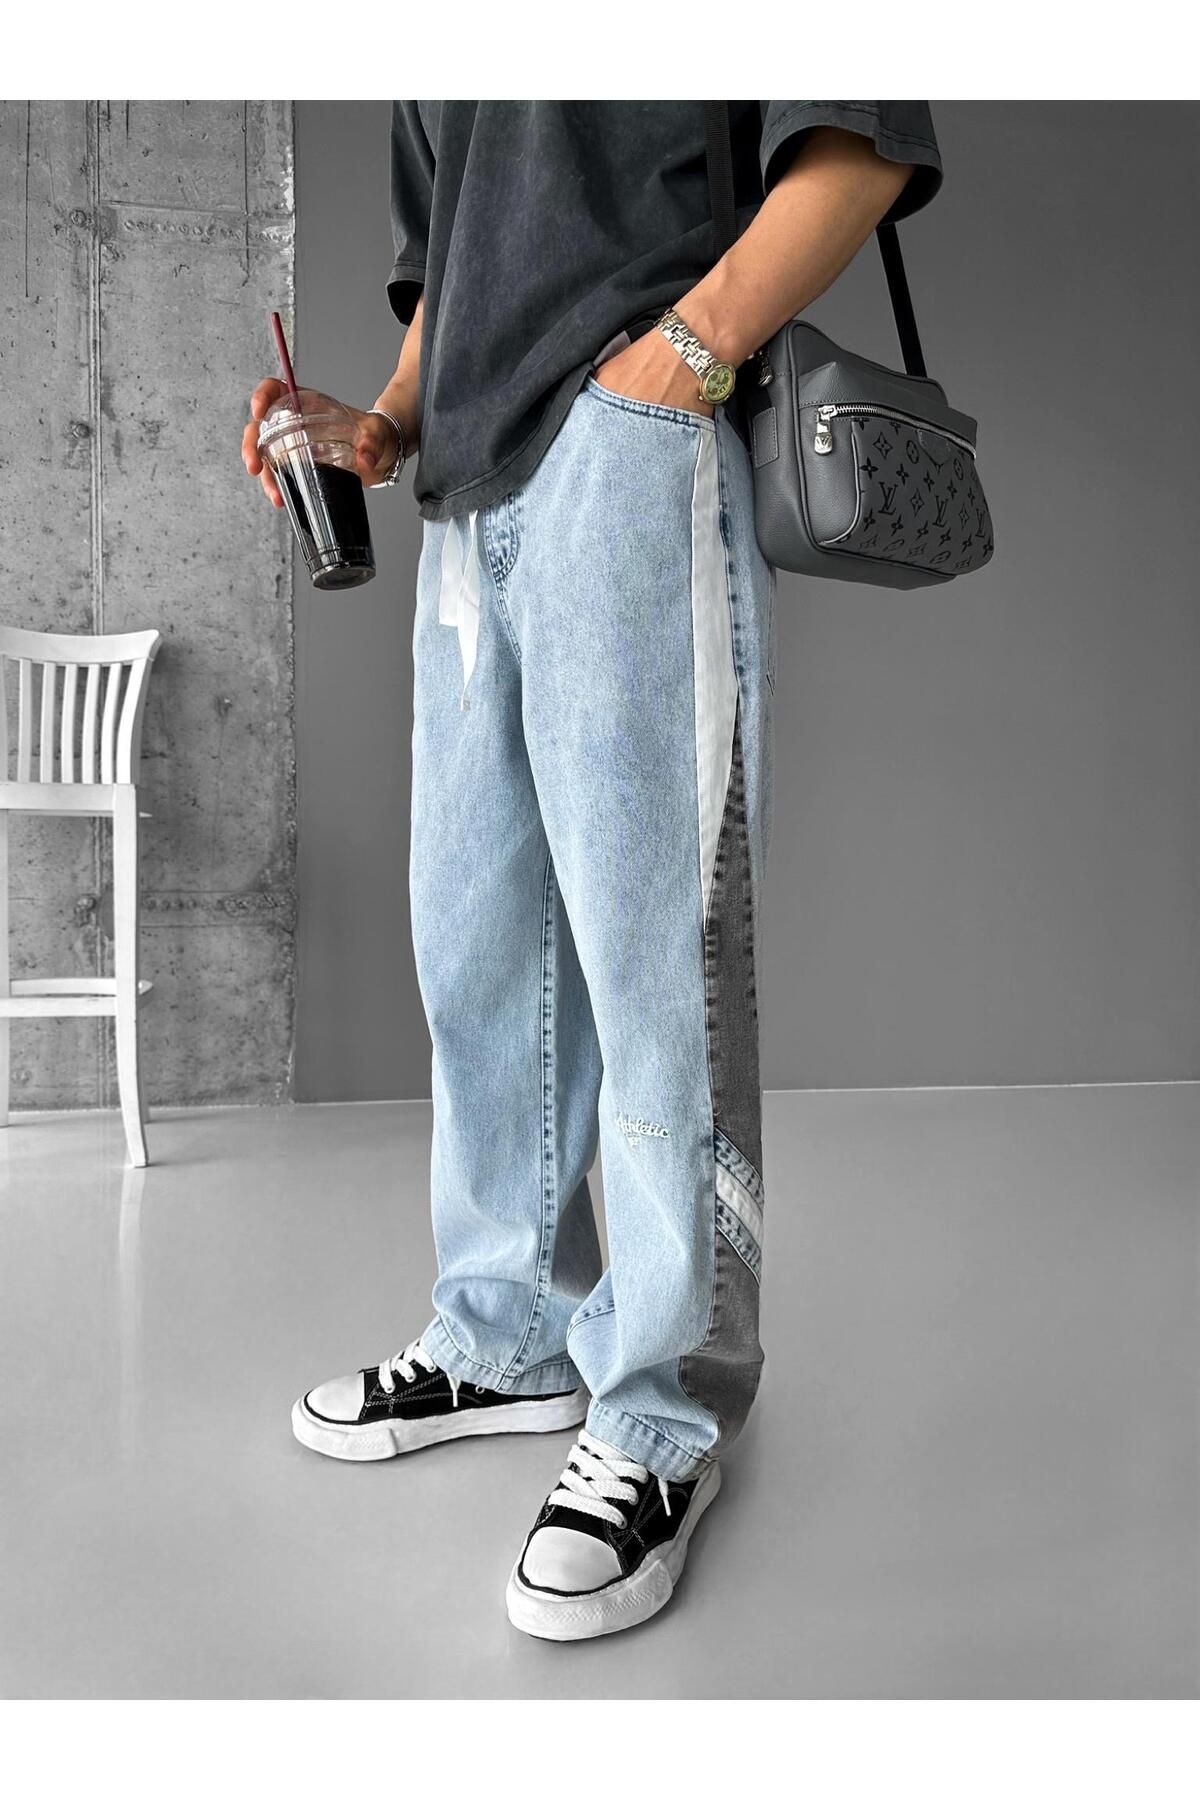 ablikaonline Джинсовые брюки Baggy Fit Retro Line с эластичной резинкой на талии, синие JEN.0091